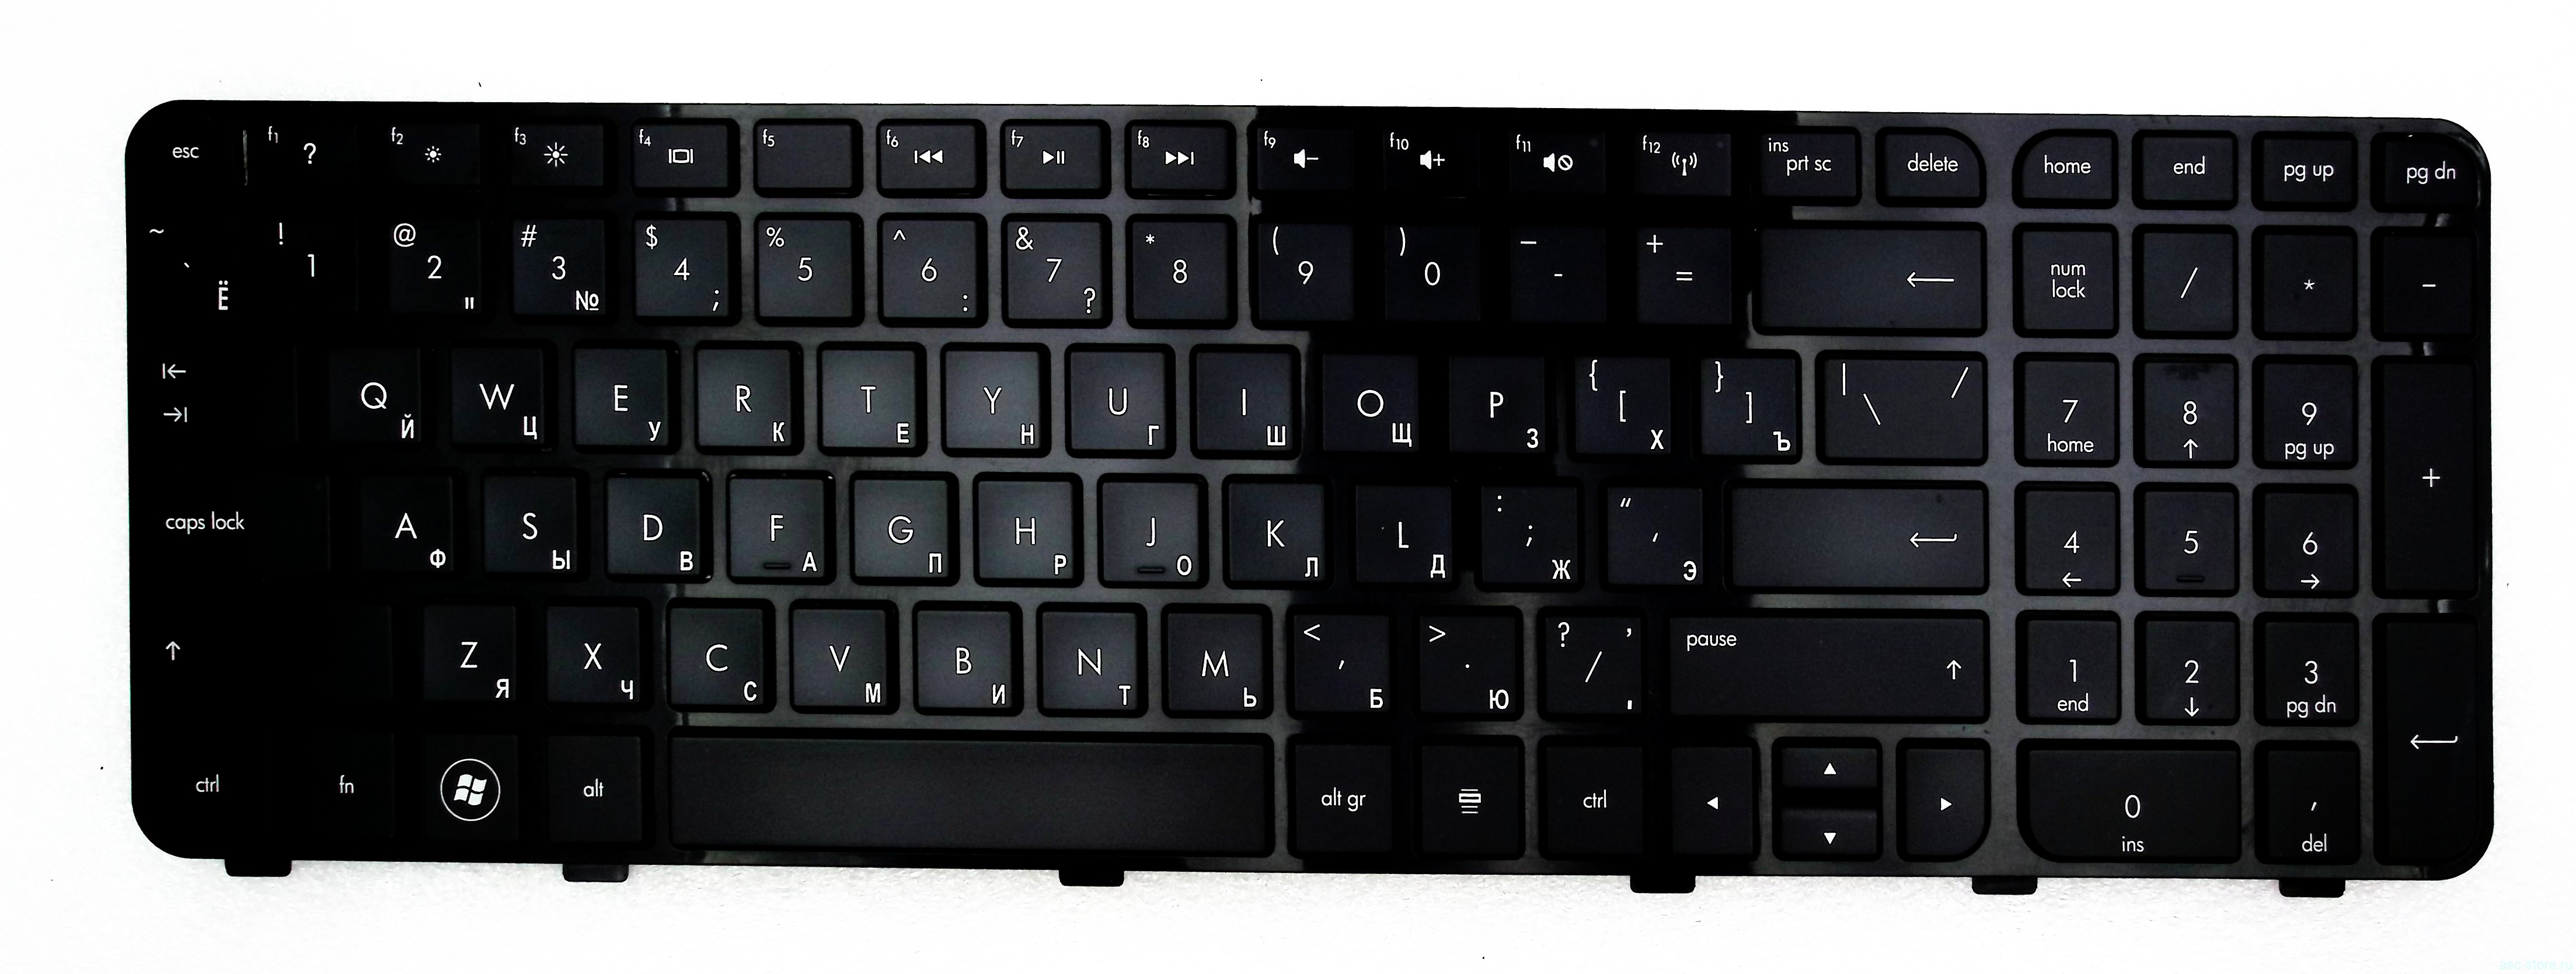 Клавиатура для ноутбука HP Pavilion dv6-7000 серии